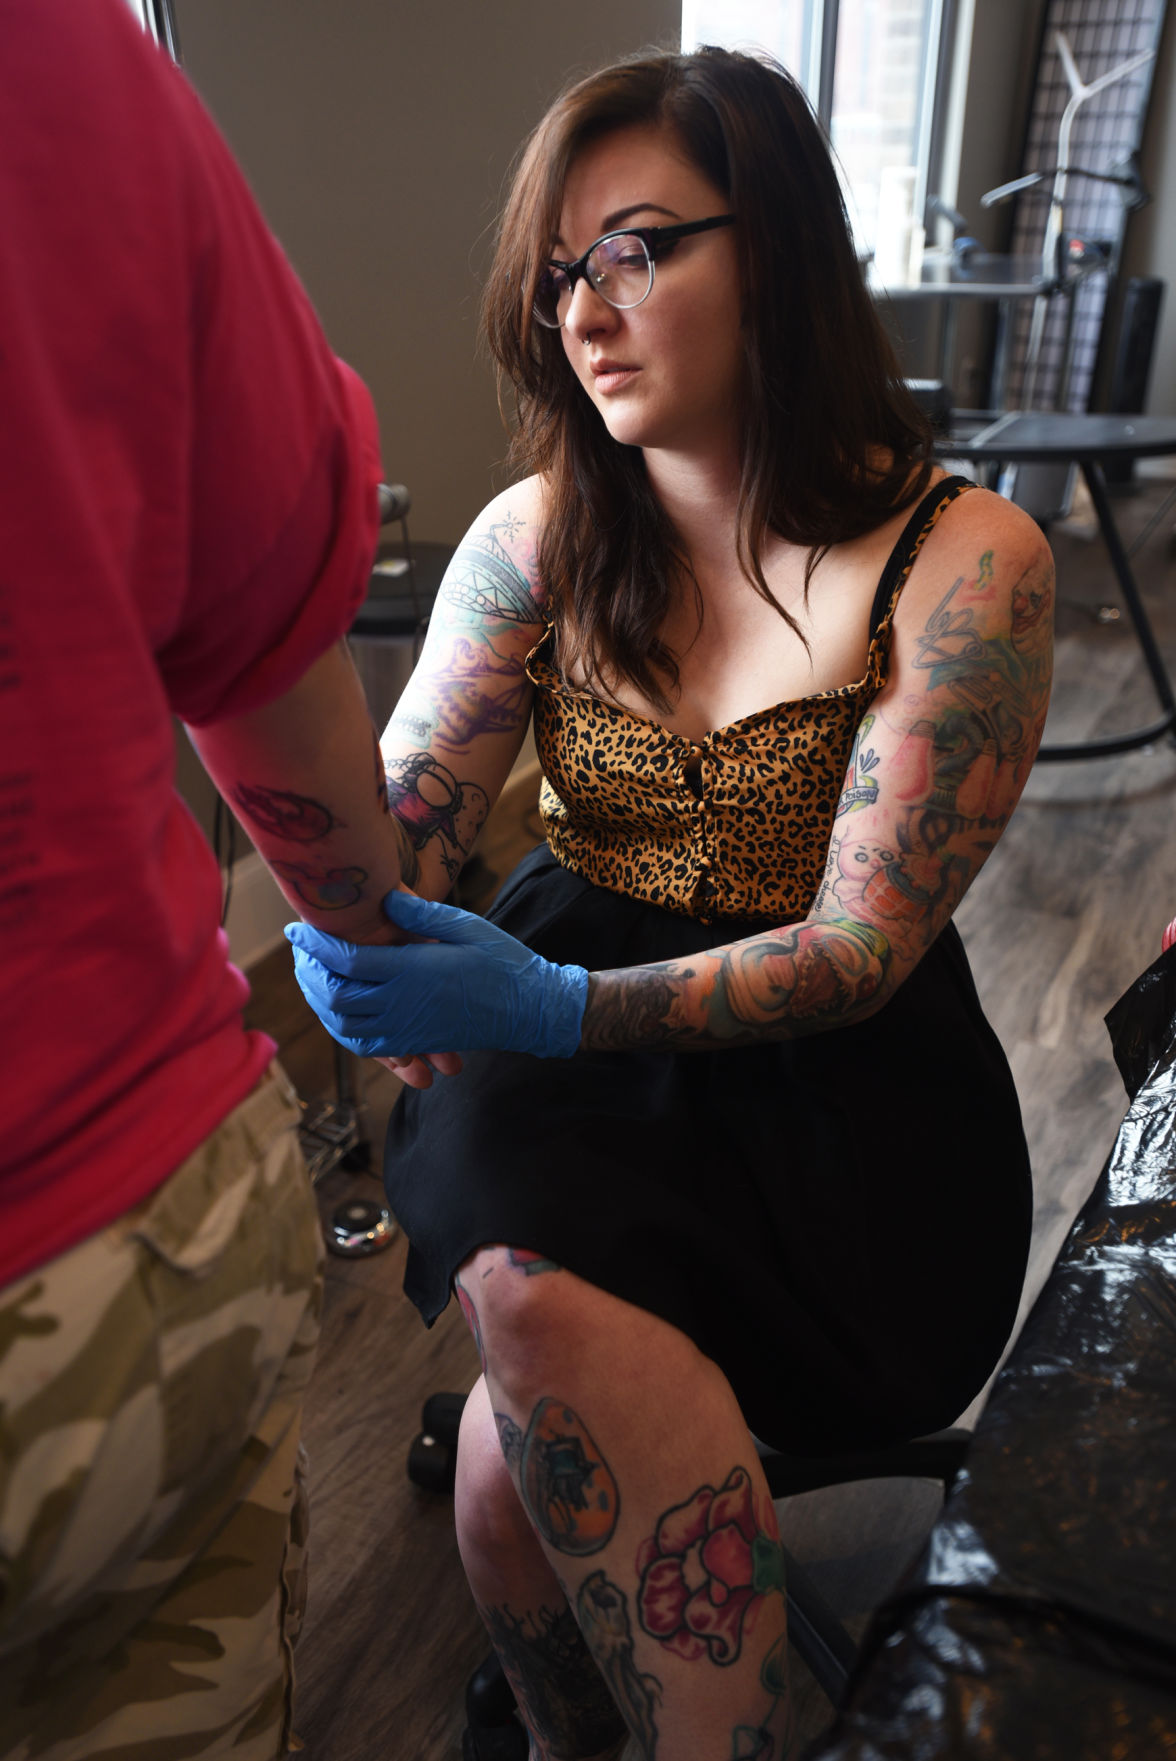 Tattoo Machine Girl - Home - Tattoos in Oshawa Ontario